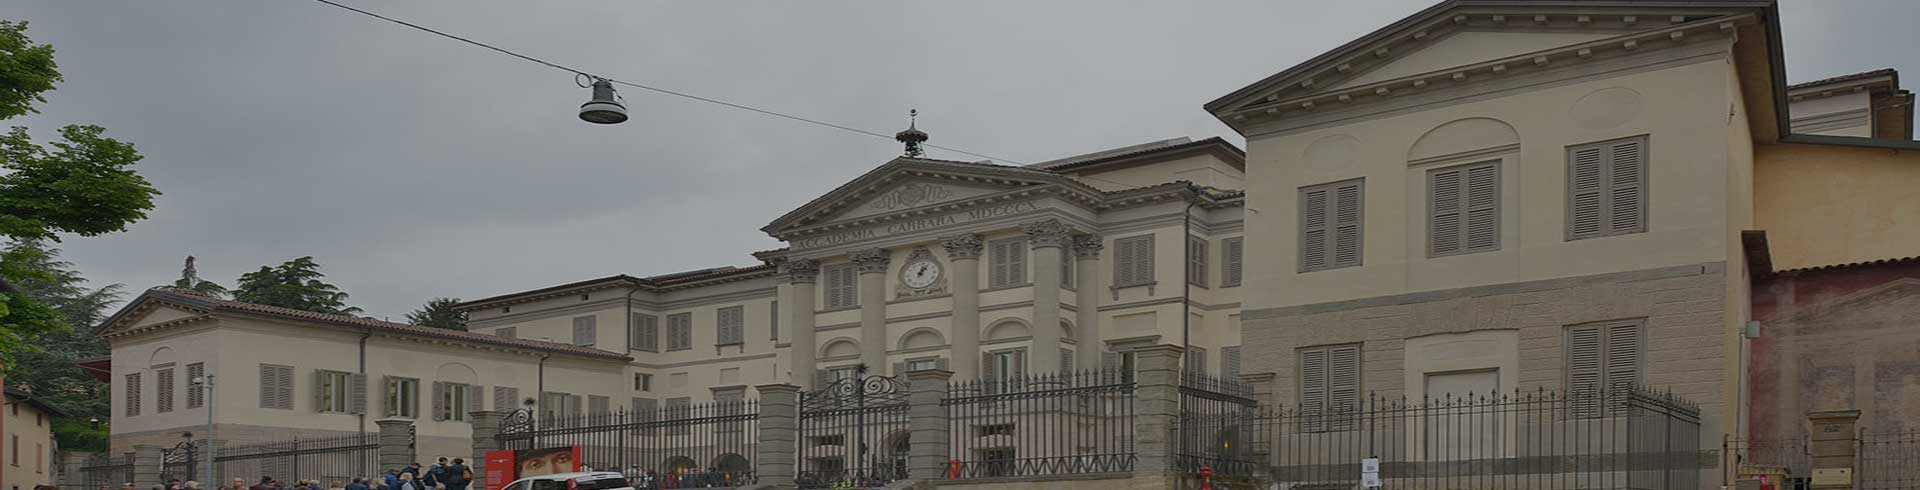 罗马美术学院